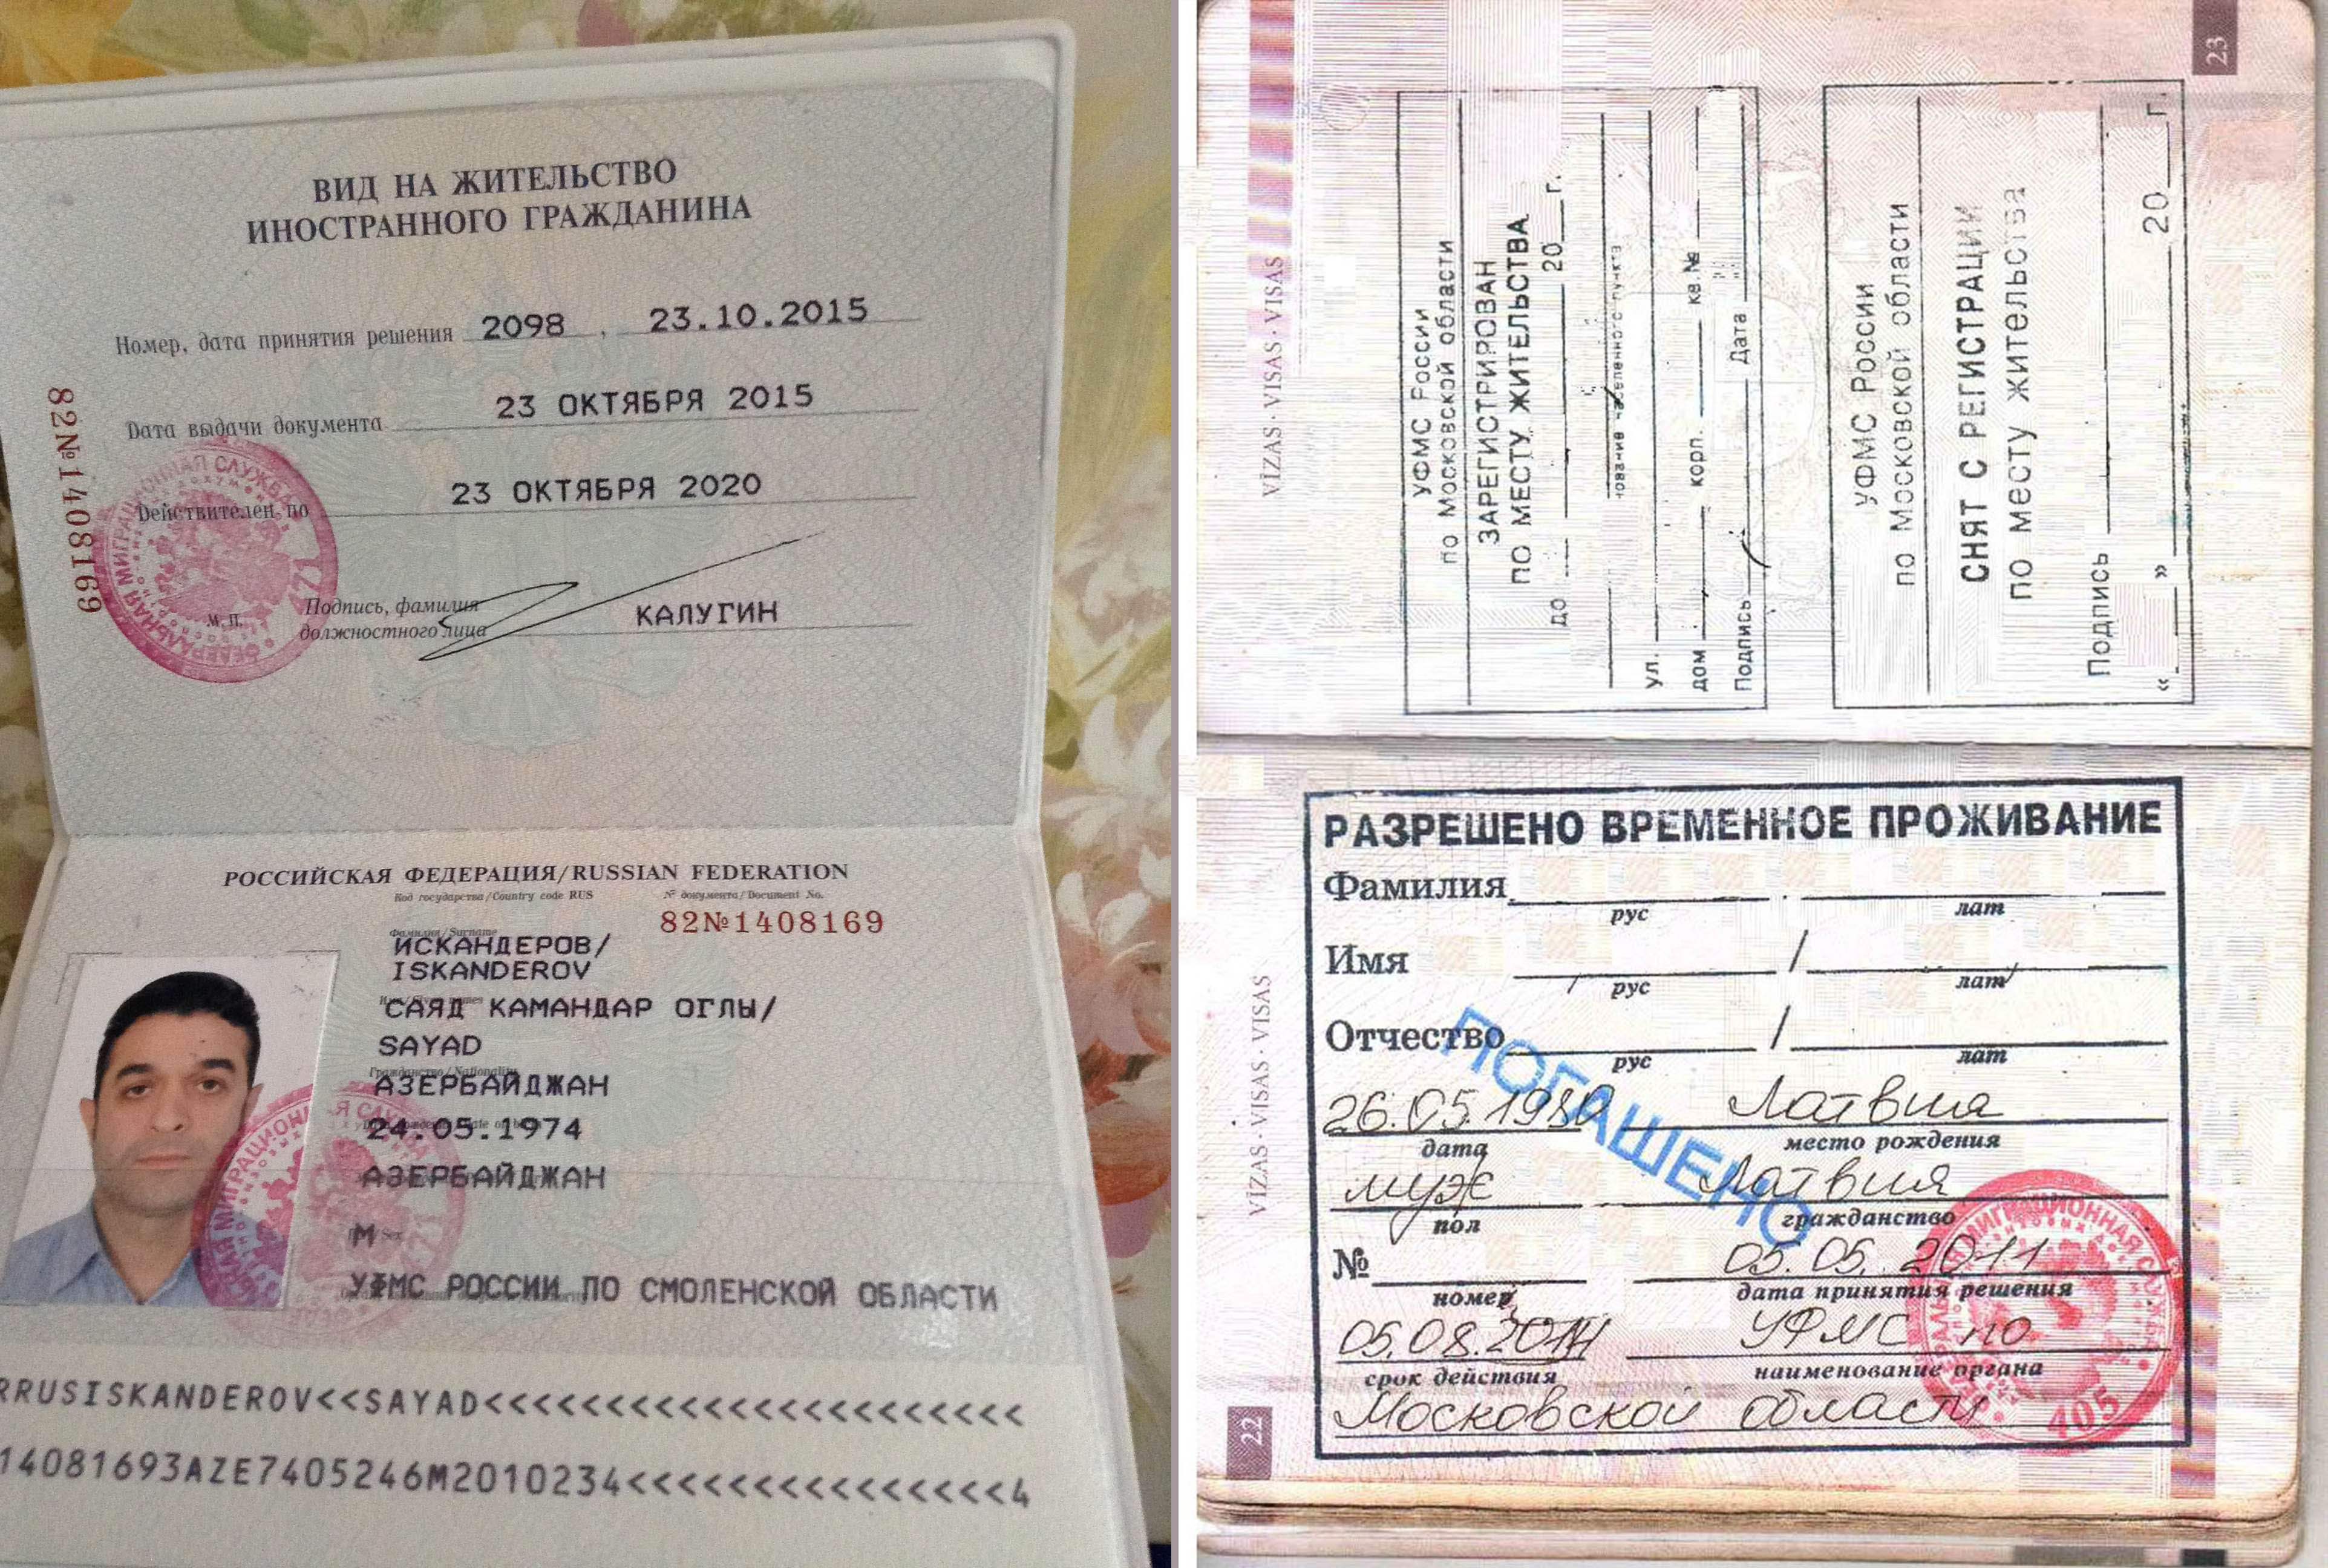 Вид на жительство в литве: особенности оформления, необходимые документы и требования :: businessman.ru